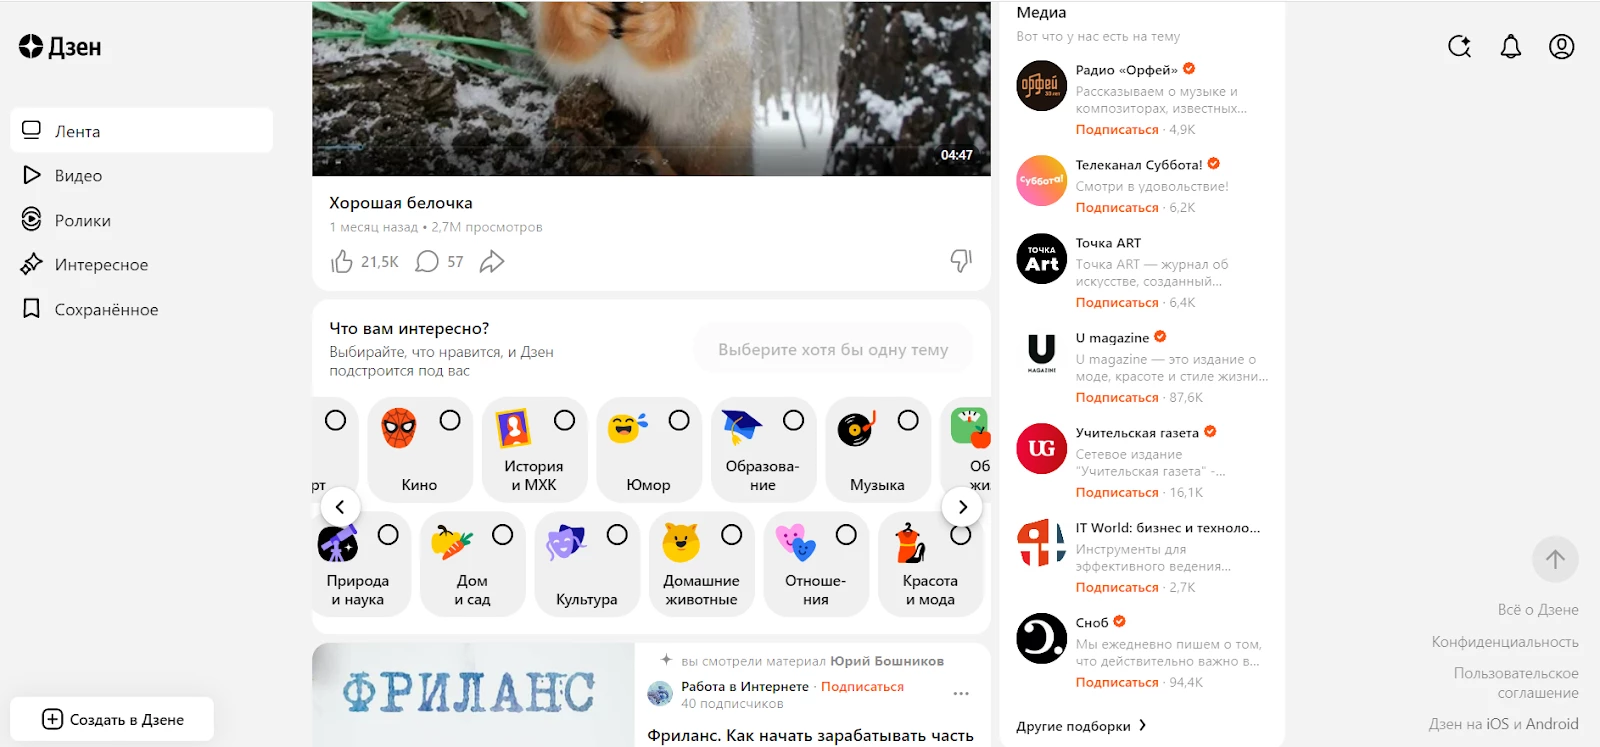 Платформа Яндекс.Дзен - возможность заработка для студентов на дому